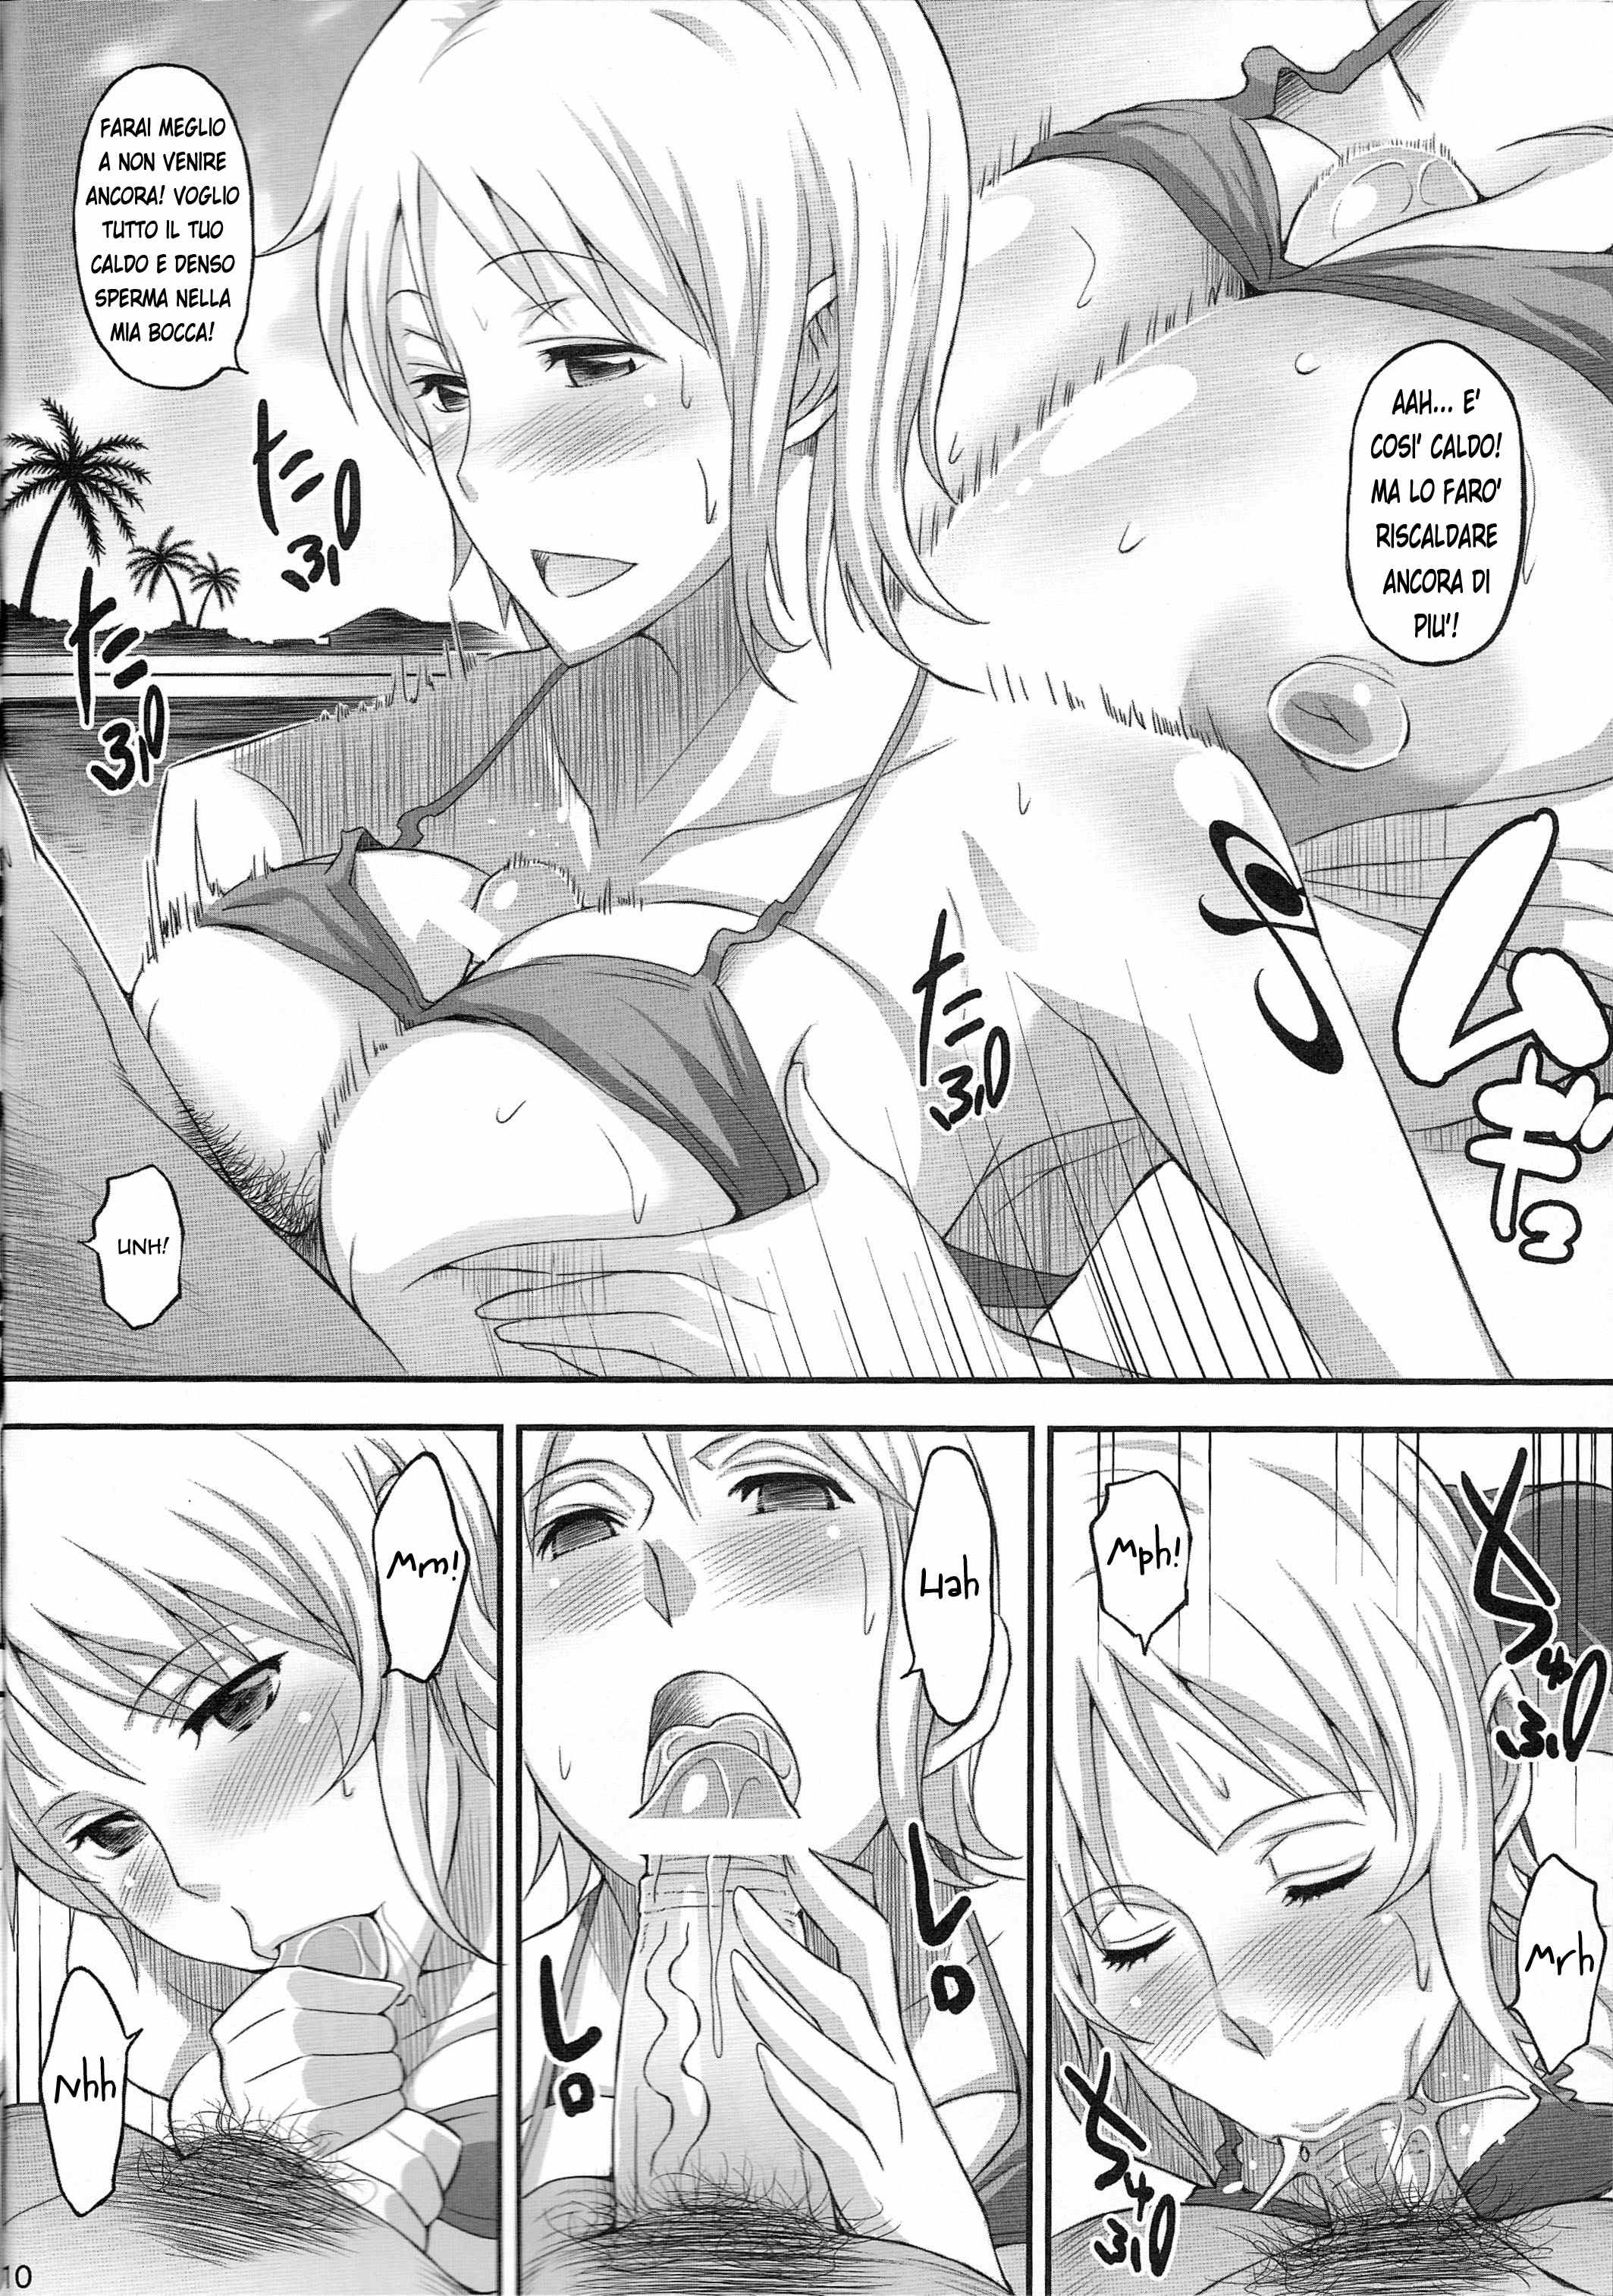 Manga porno sex story - Nude gallery